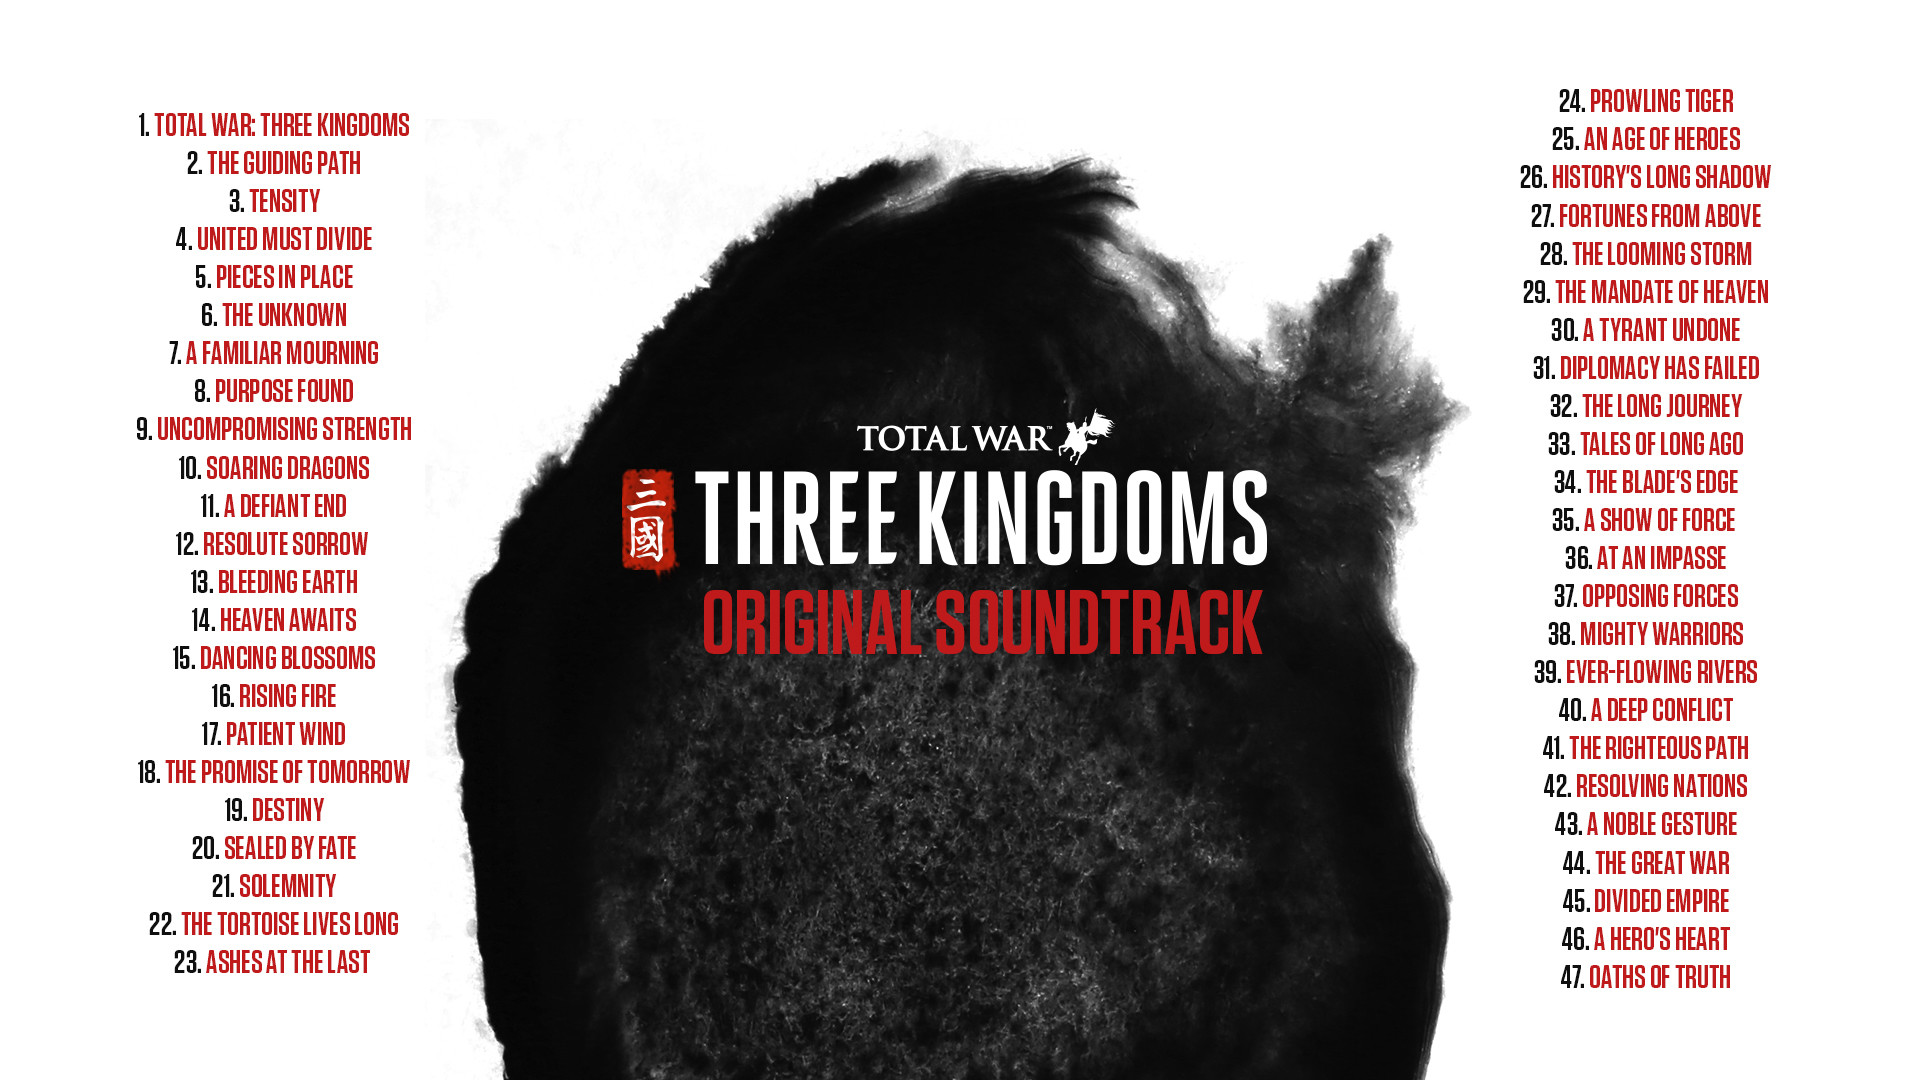 Total War: THREE KINGDOMS - Original Soundtrack Featured Screenshot #1